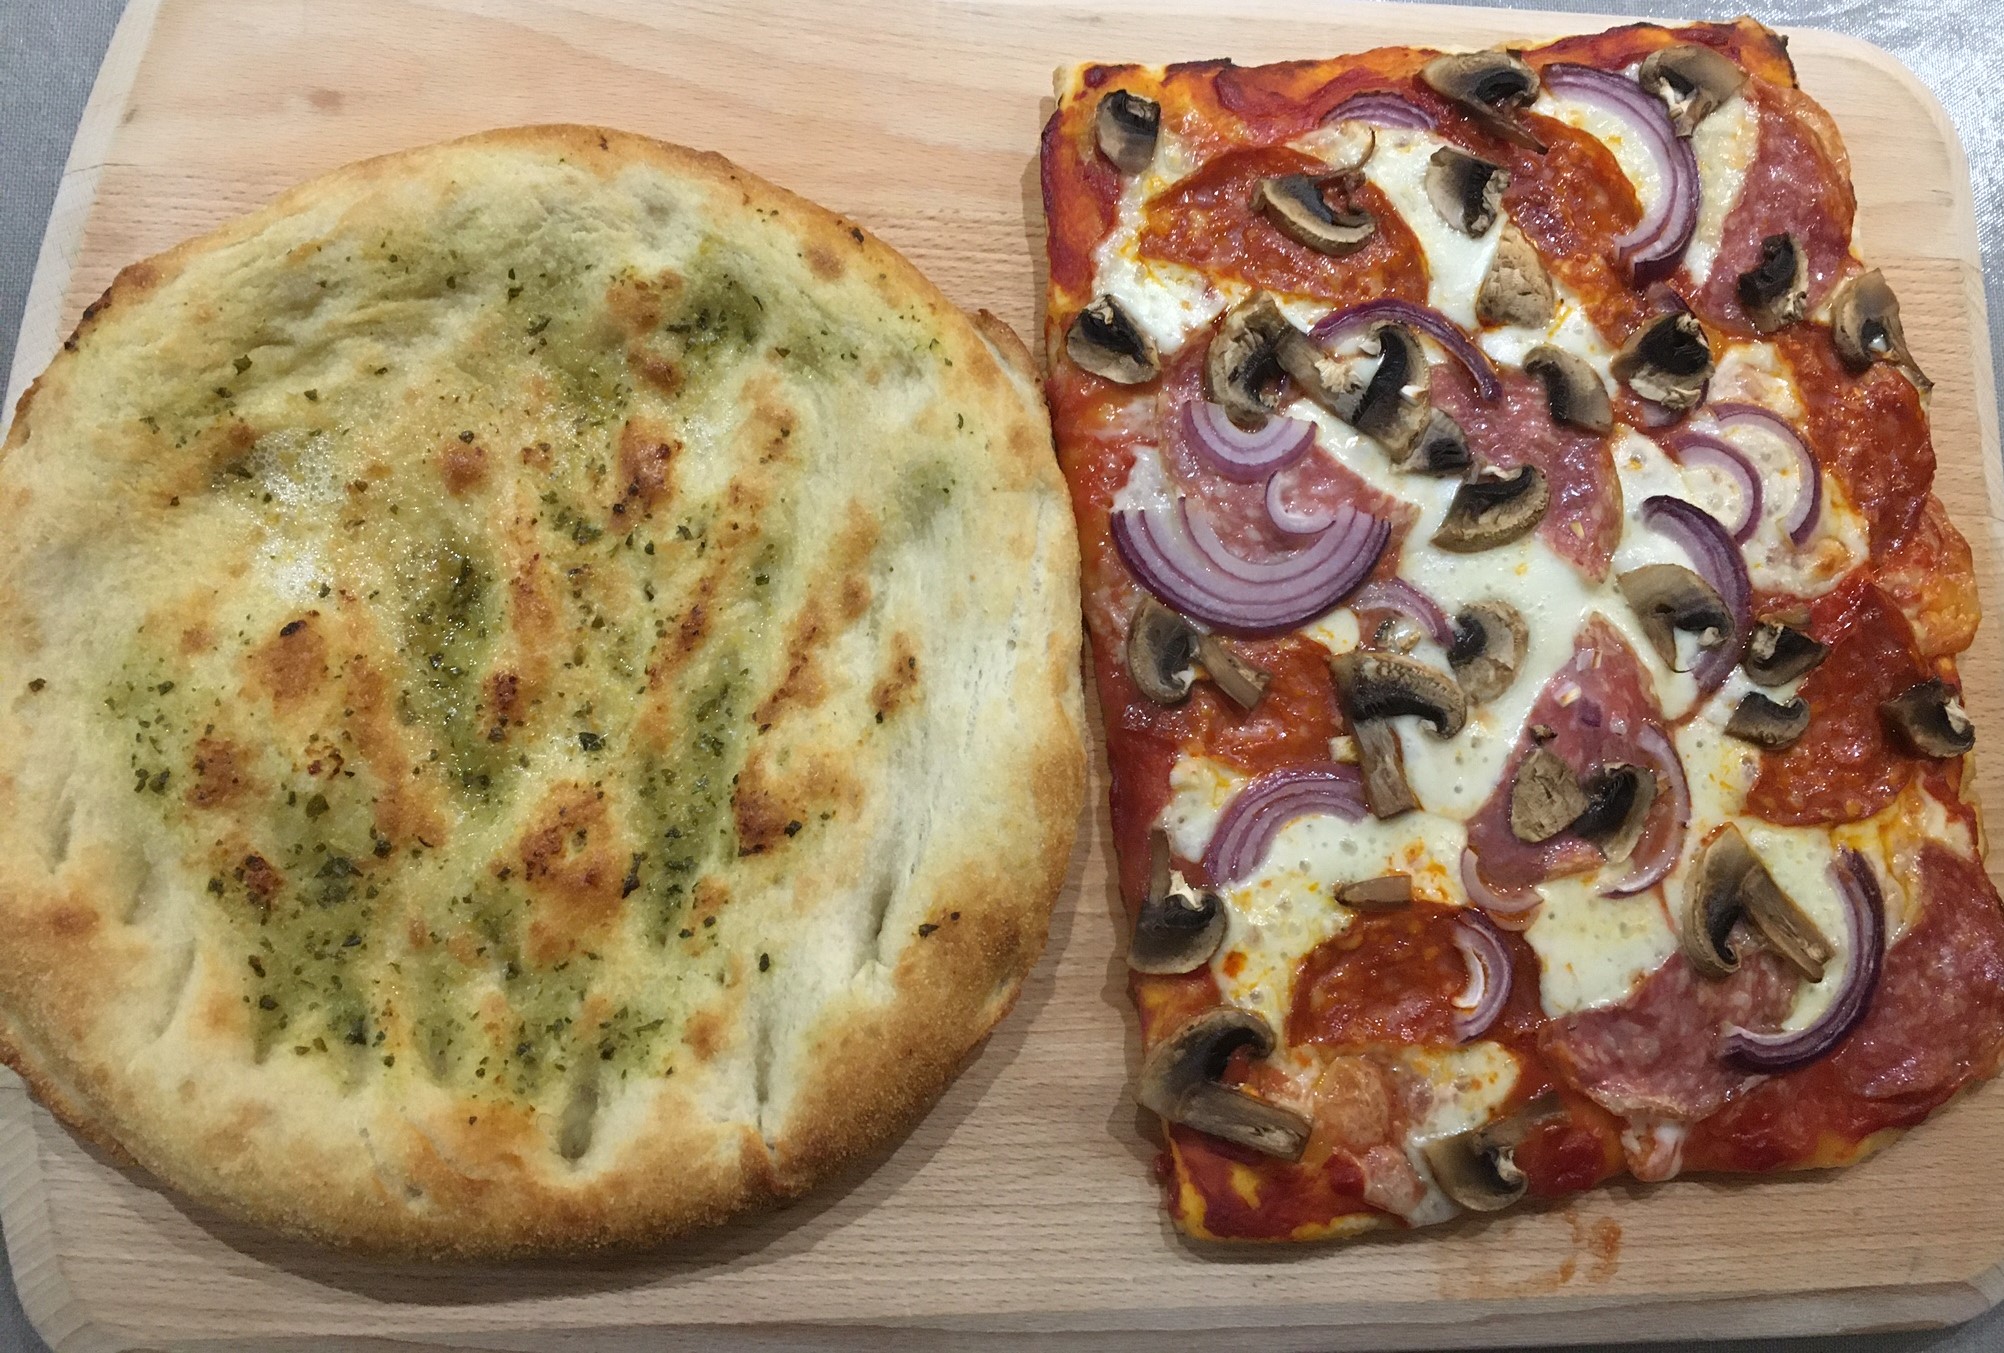 Square pizza & garlic bread